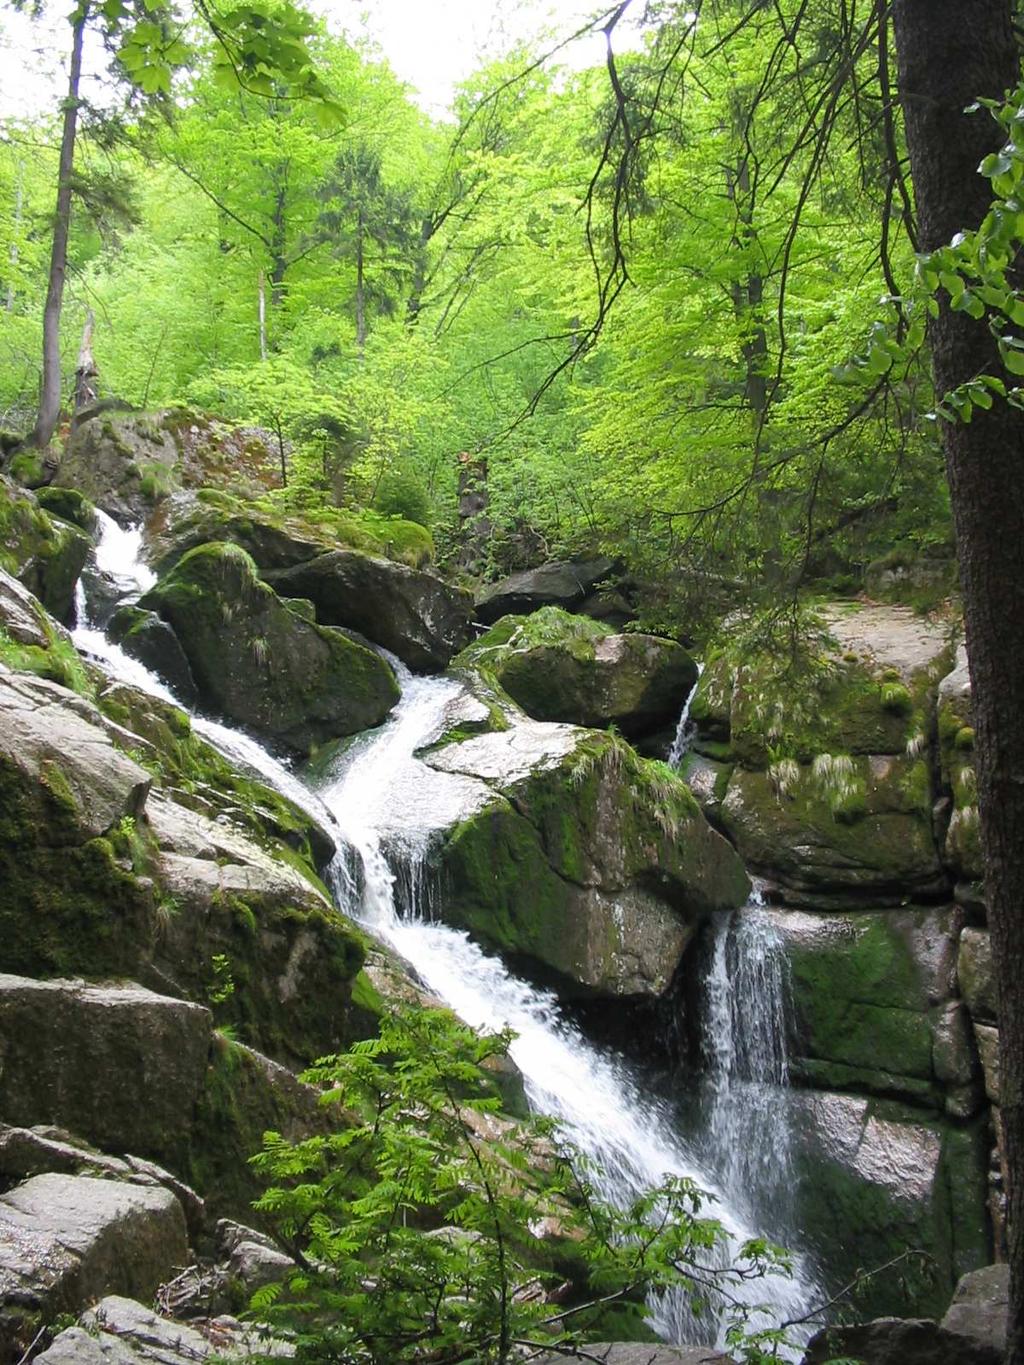 údolí Černého potoka, Velkého a Malého Štolpichu) - mnohde s vodopády a kaskádami na jižní stranu spadají hory stupňovitě a pozvolněji,